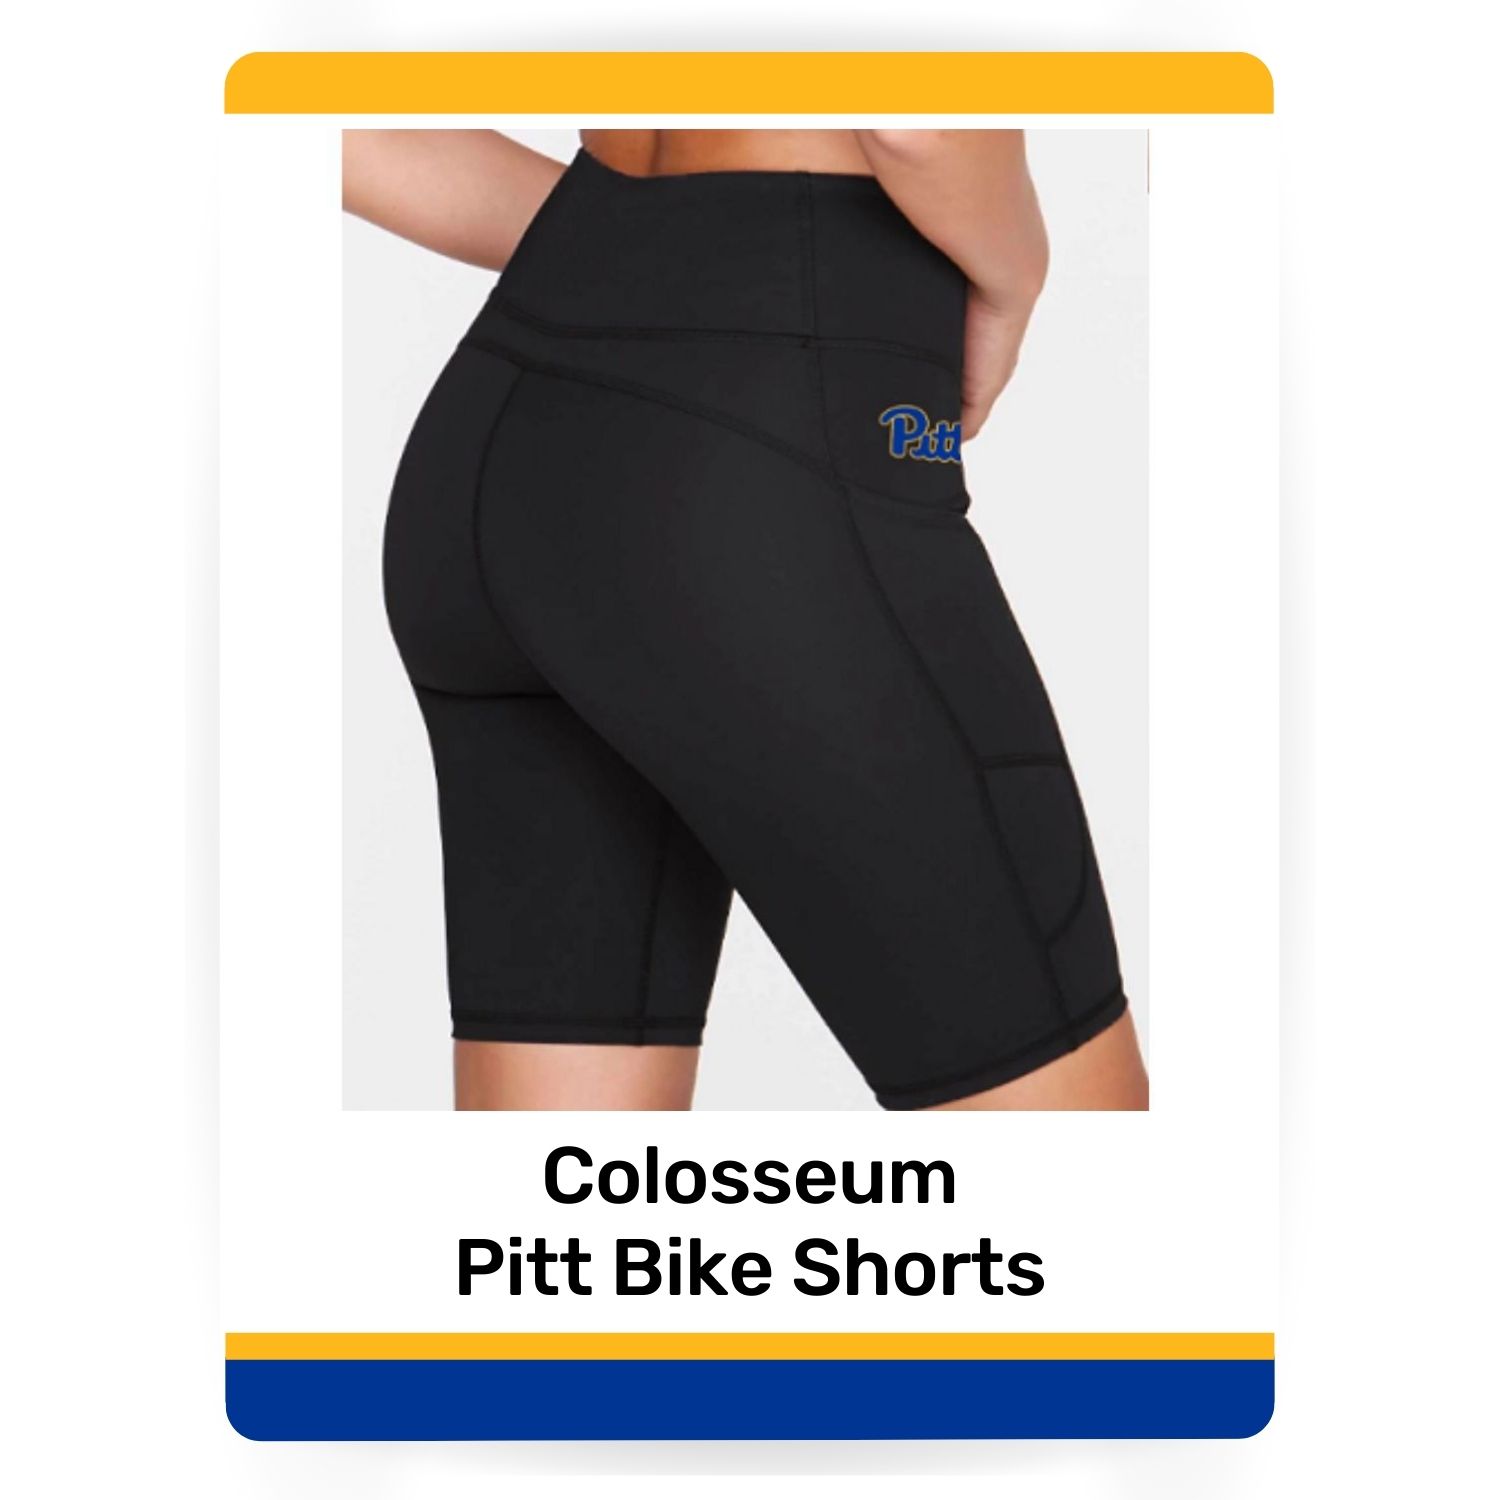 Colosseum Pitt Bike Shorts